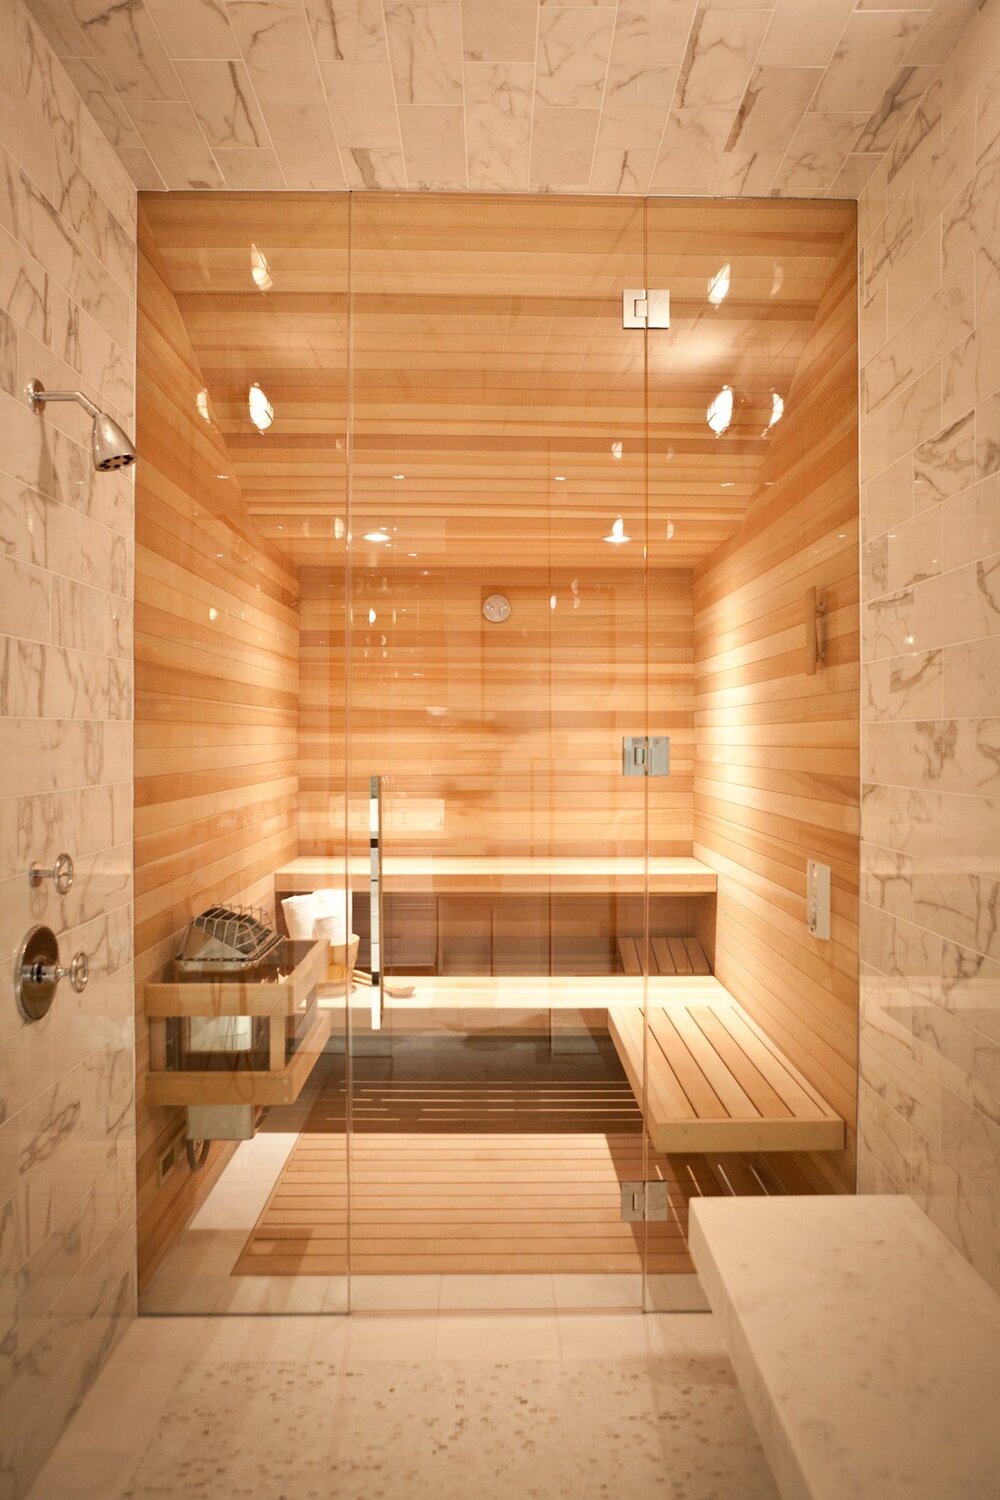 ev tipi sauna nasil kurulur evde sauna keyfi dekorasyon onerileri trendler kendin yap fikirleri armut com blog